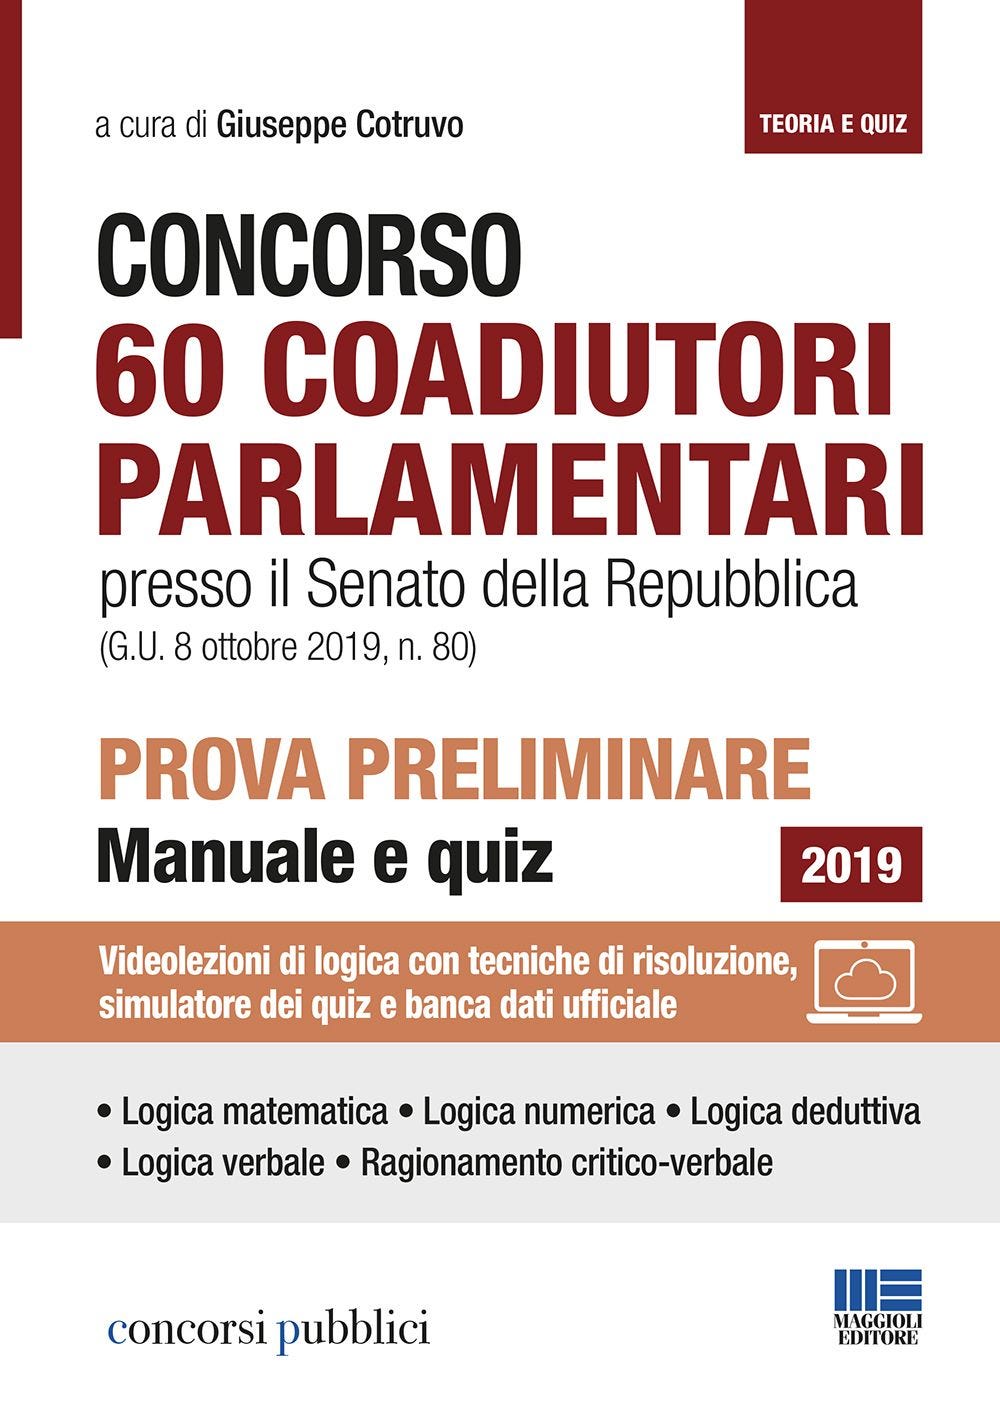 Concorso 60 Coadiutori parlamentari presso il Senato della Repubblica (G.U. 8 ottobre 2019, n. 80) - Prova preliminare